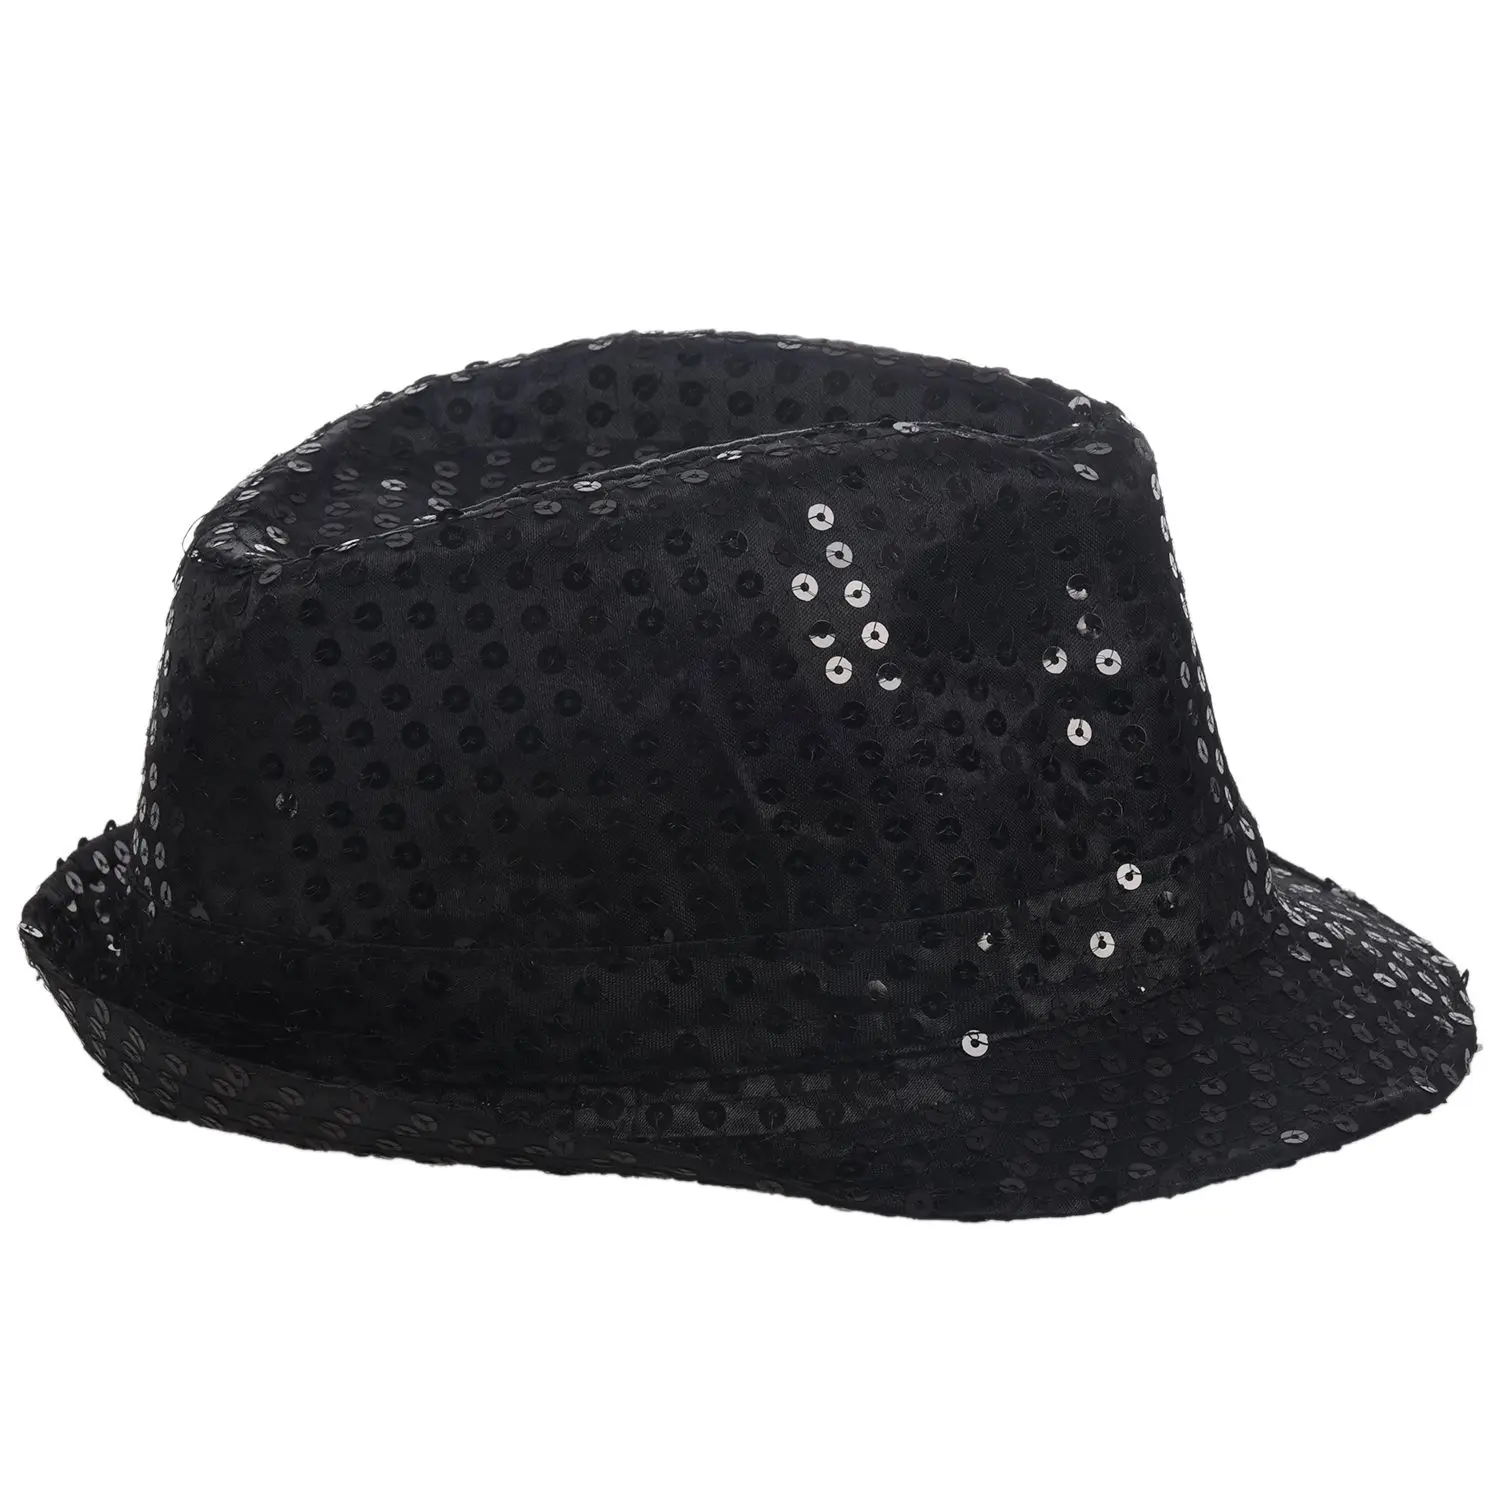 Блестящая шляпа Трилби топ шляпа нарядное платье Вечерние девичник ночной танец театральные шоу, черный